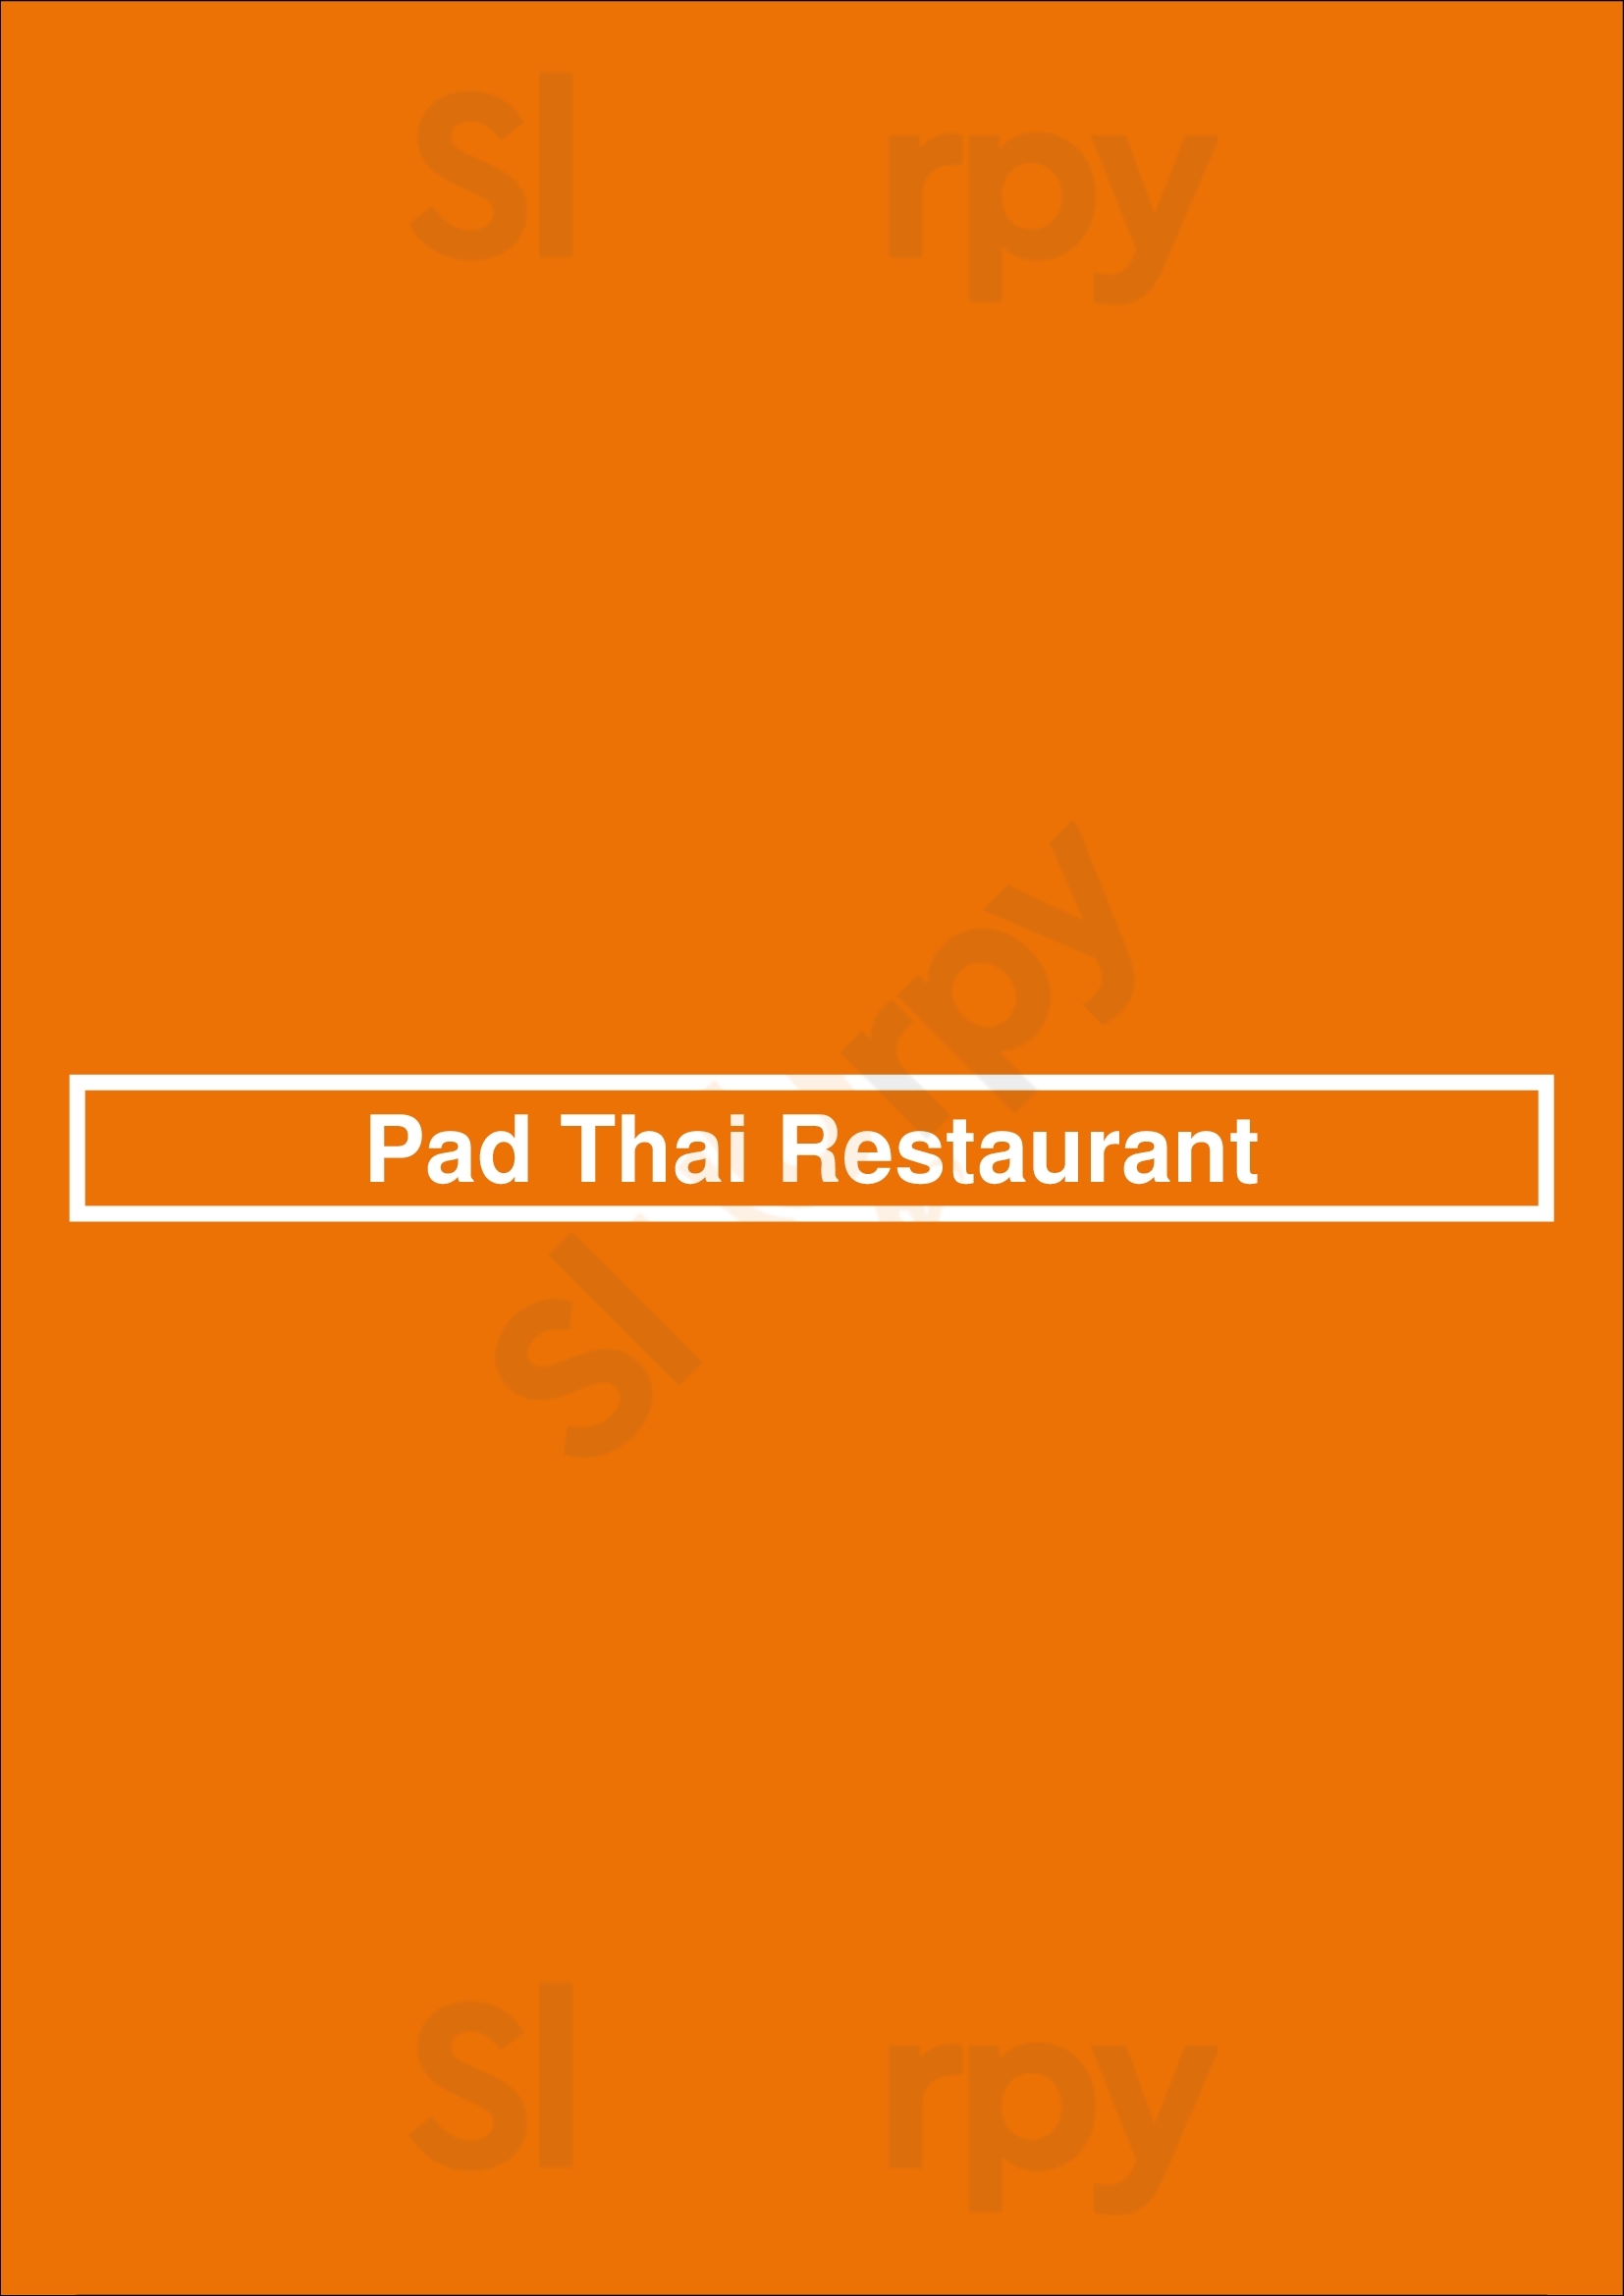 Pad Thai Restaurant München Menu - 1